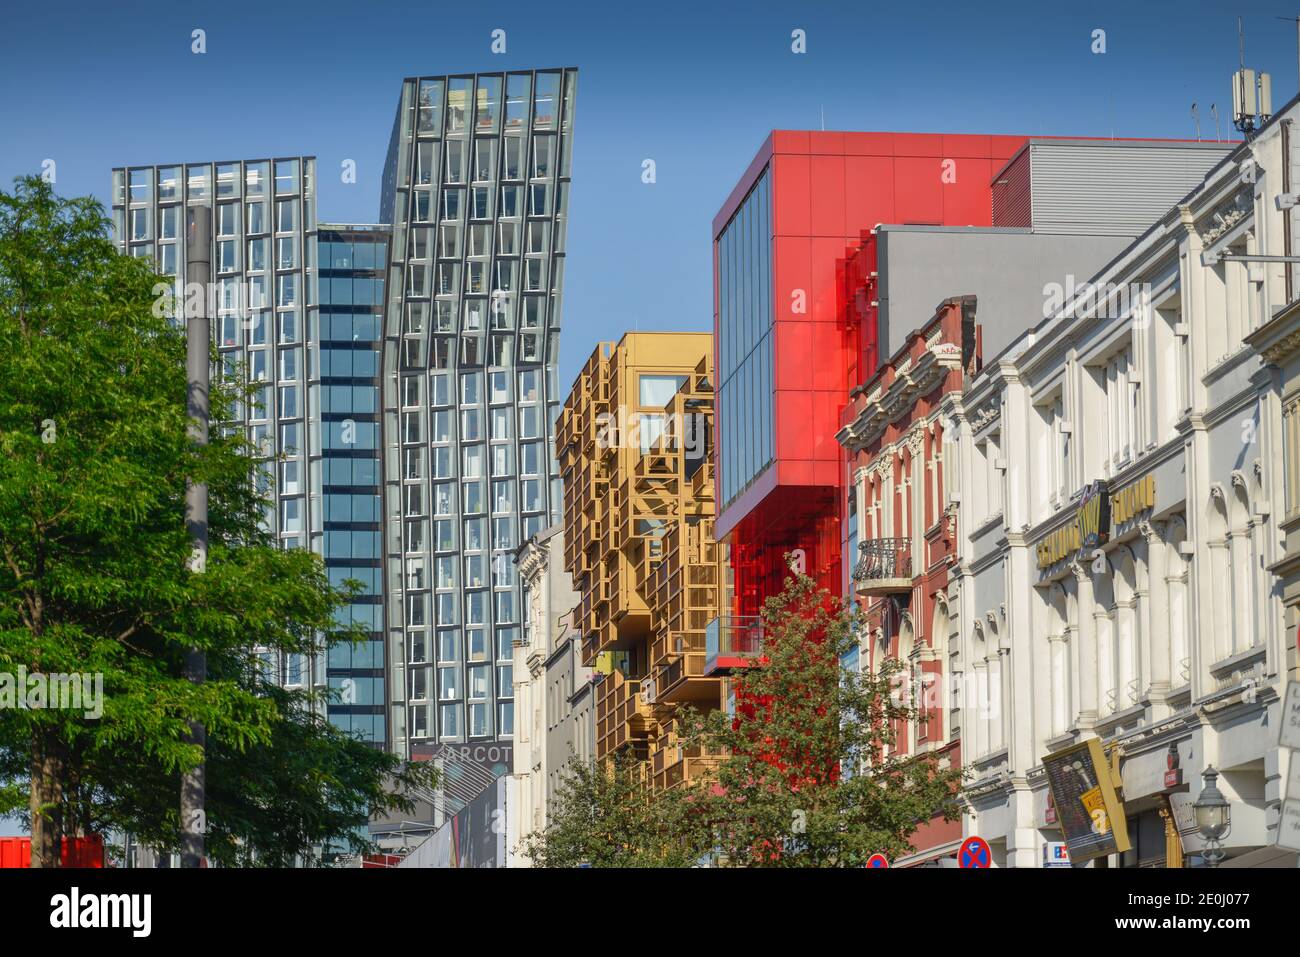 Hausfassaden, Spielbudenplatz, Reeperbahn, St. Pauli, Hamburg, Deutschland Stock Photo